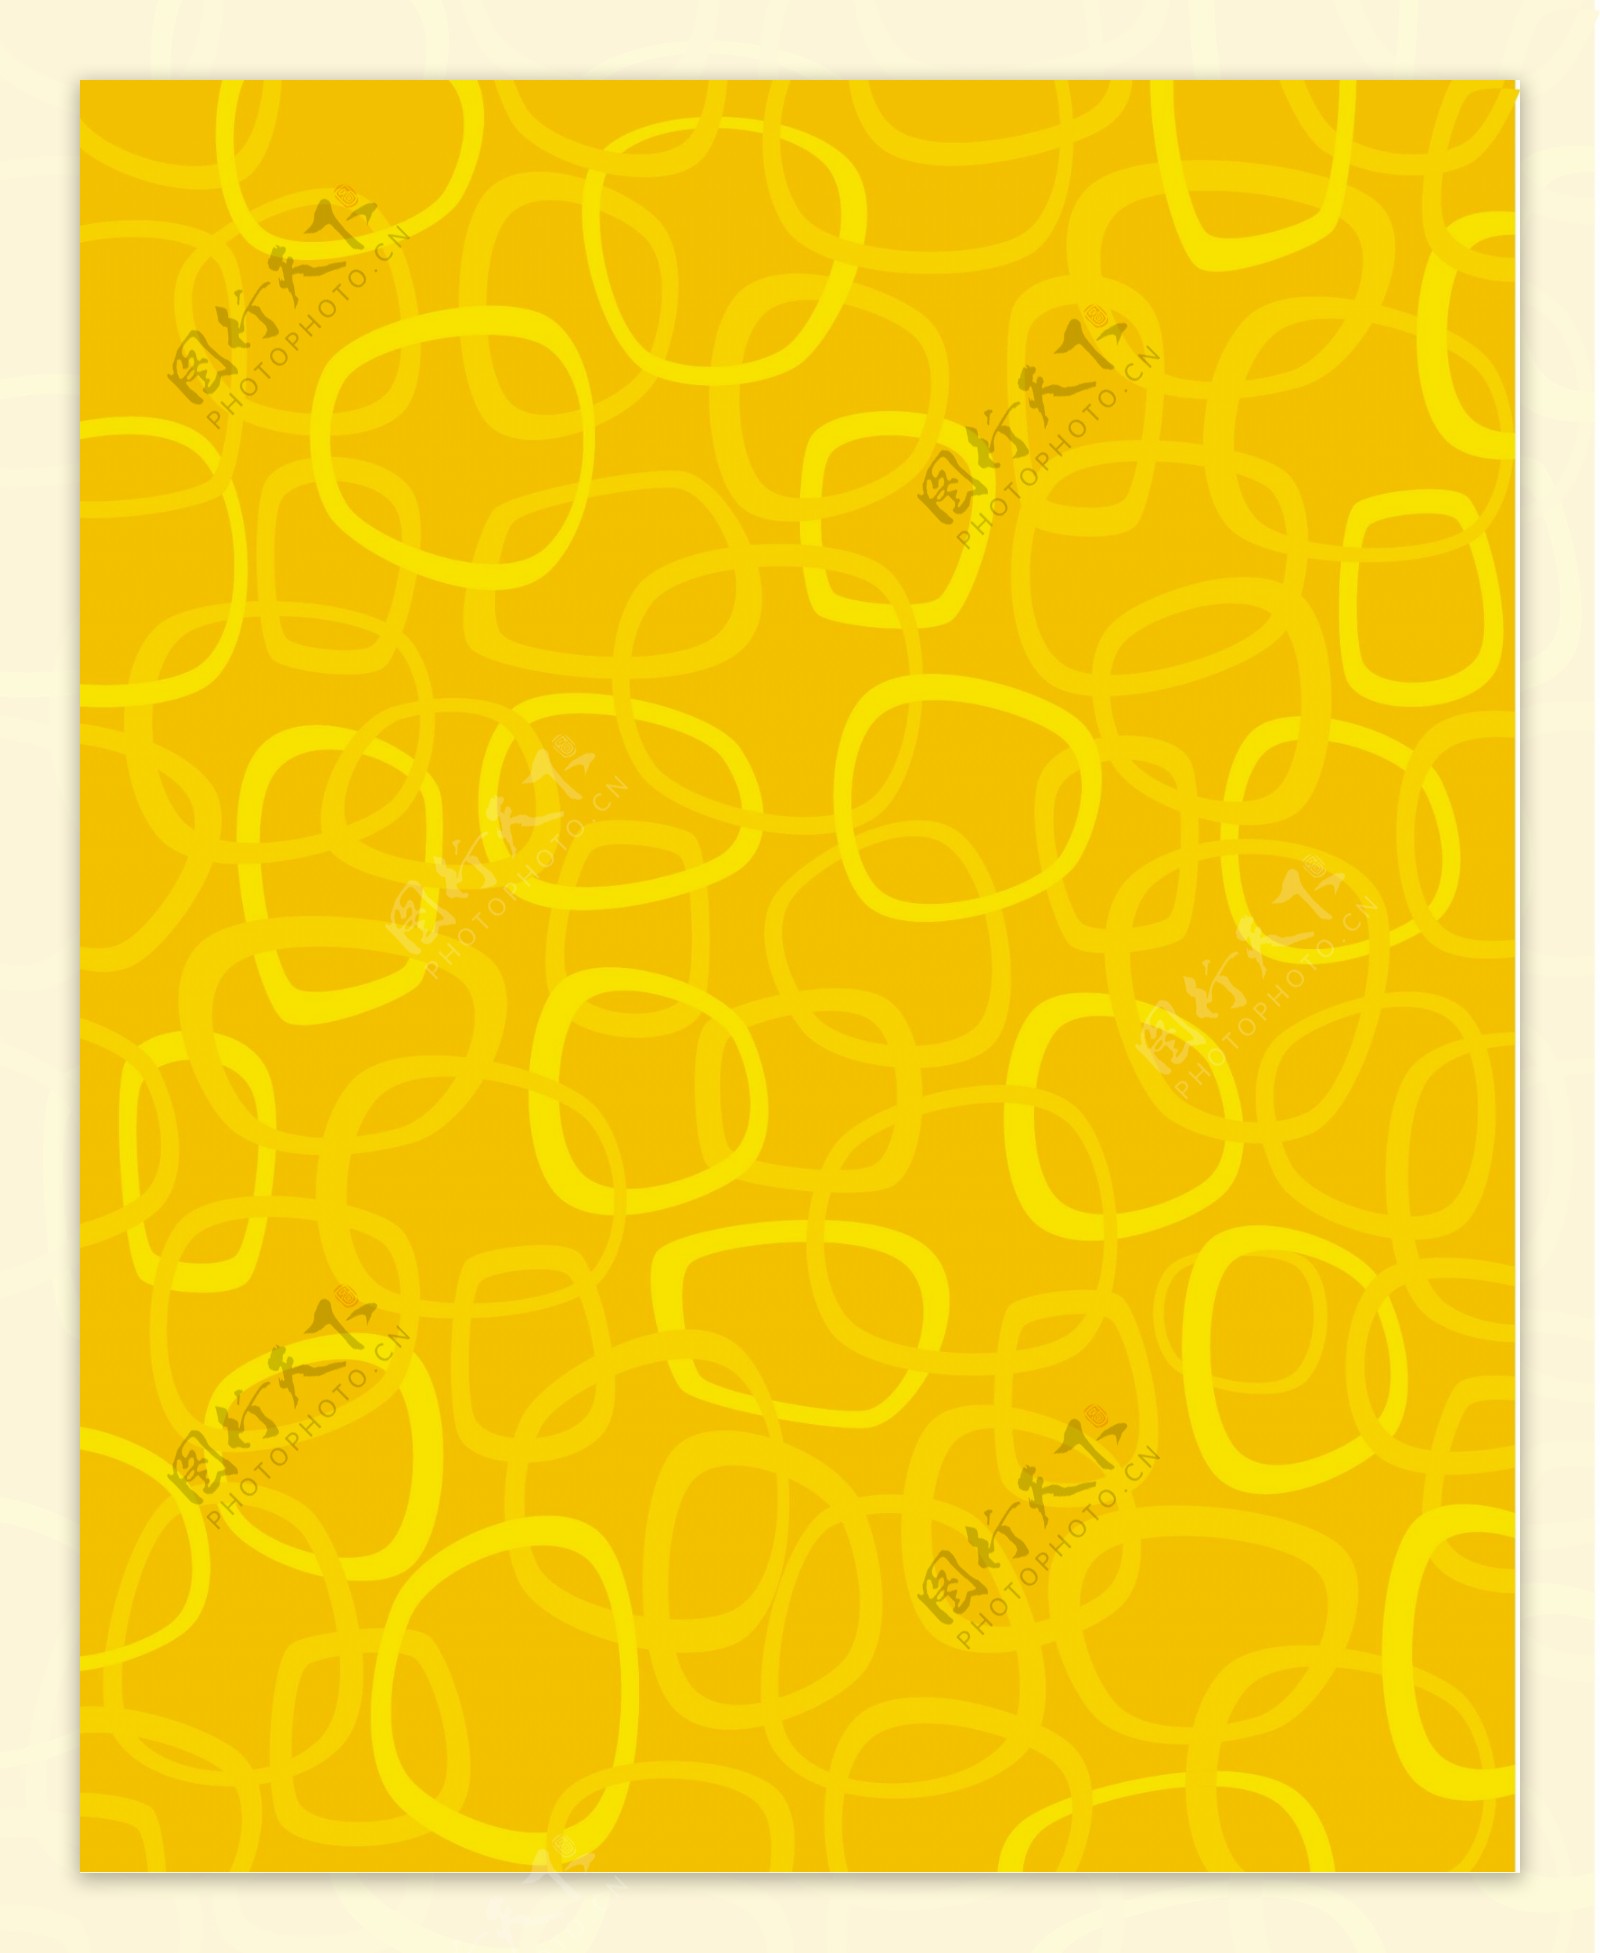 黄色底纹布料印花